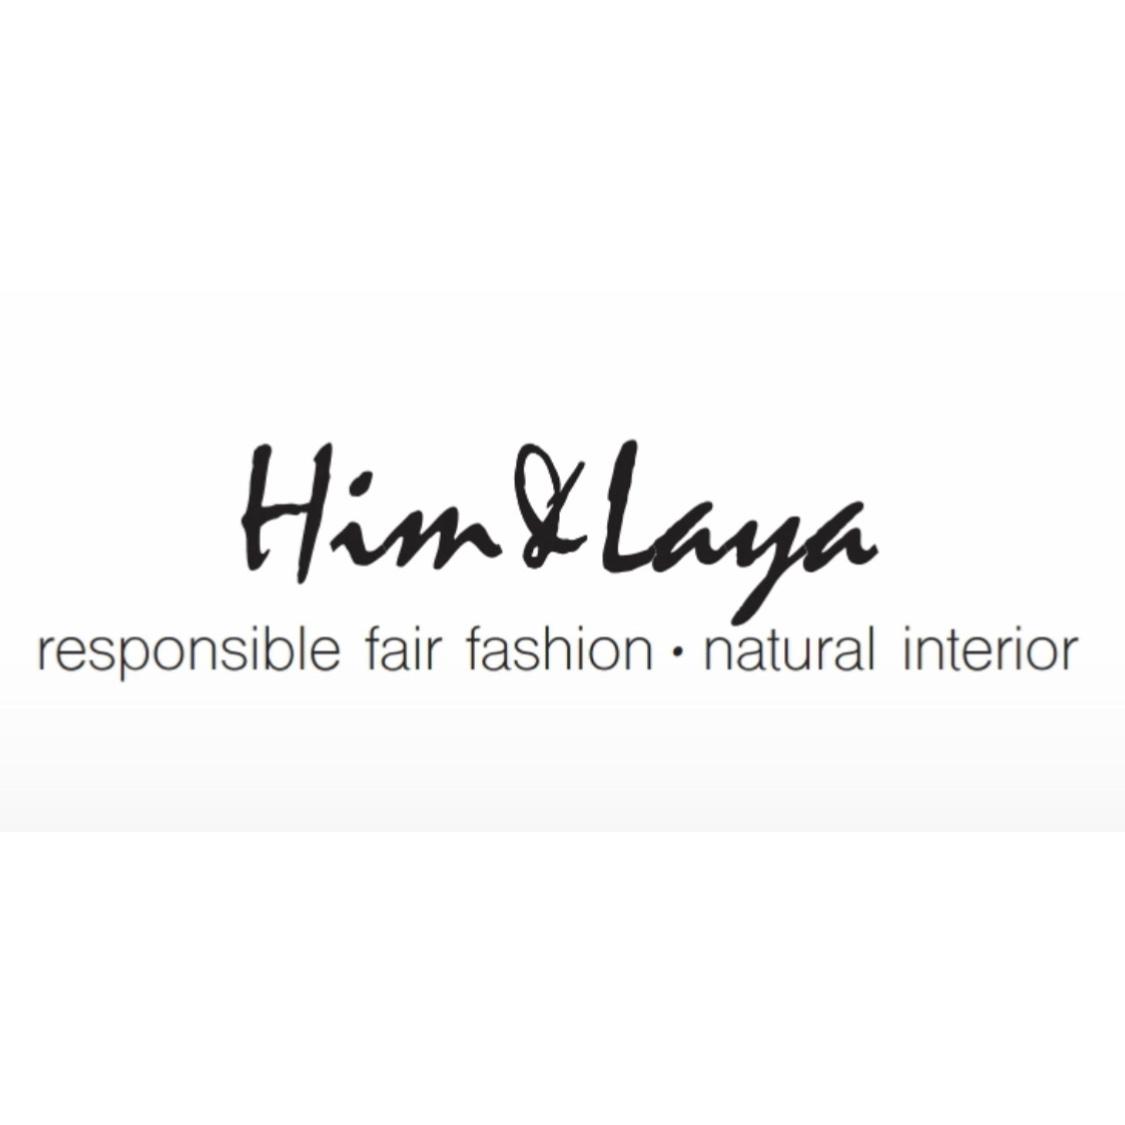 Bild zu Him & Laya - responsible fair fashion - natural Interior in Hamburg